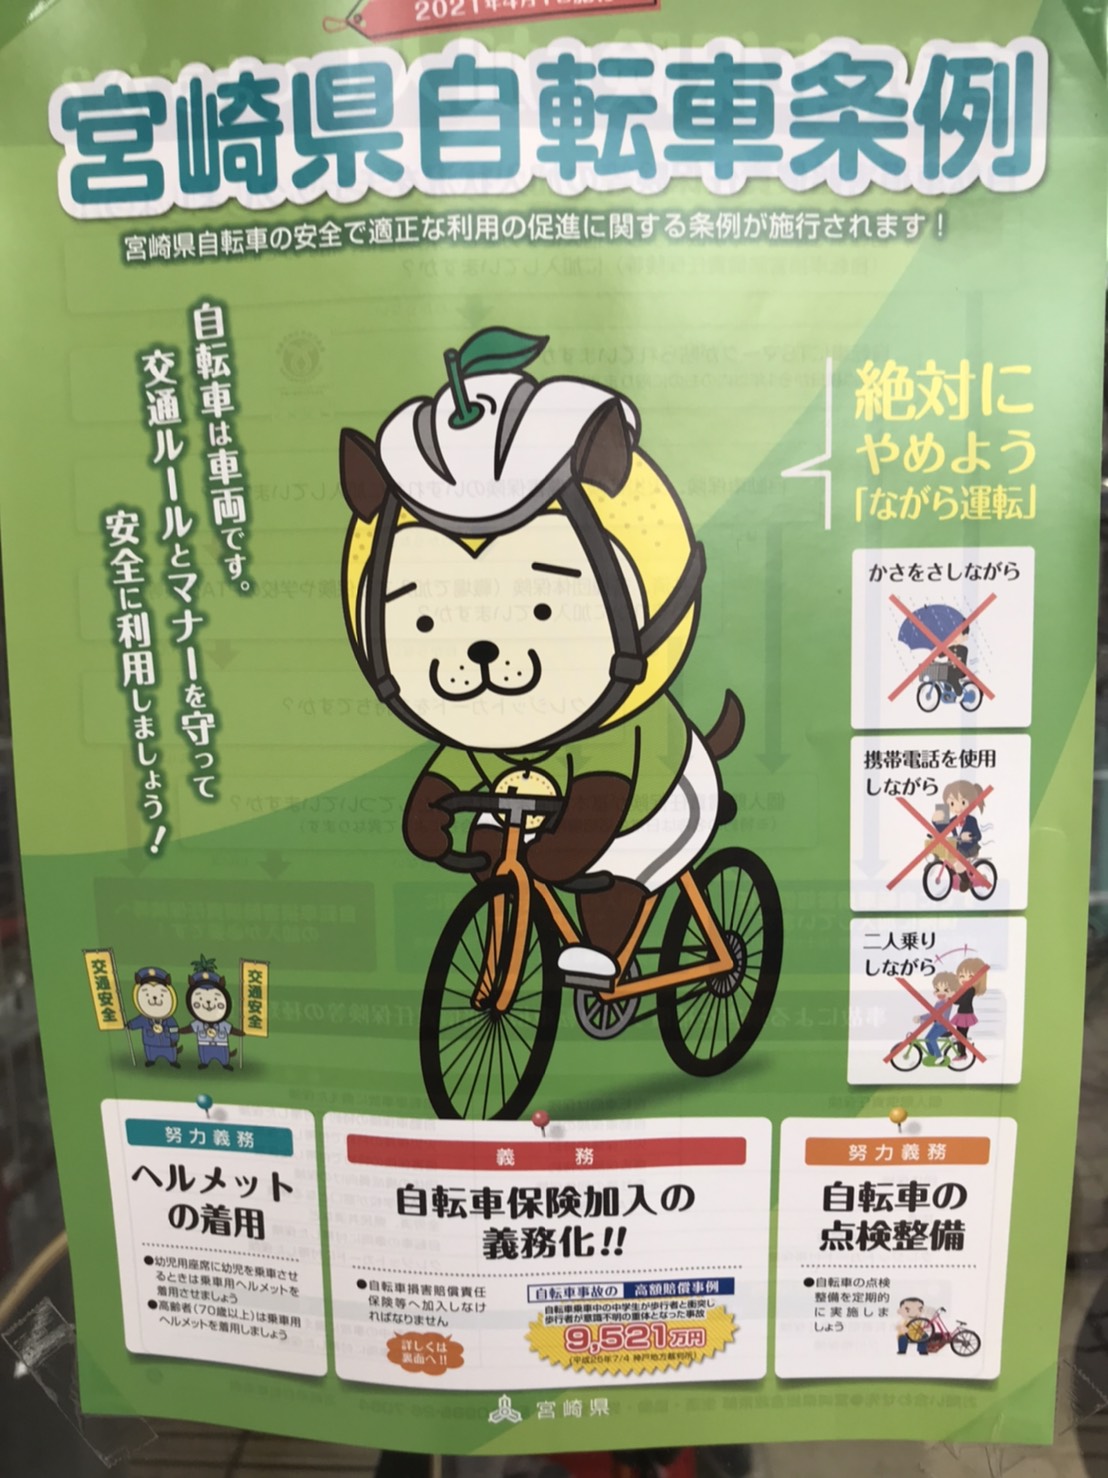 自転車 の 保険 加入